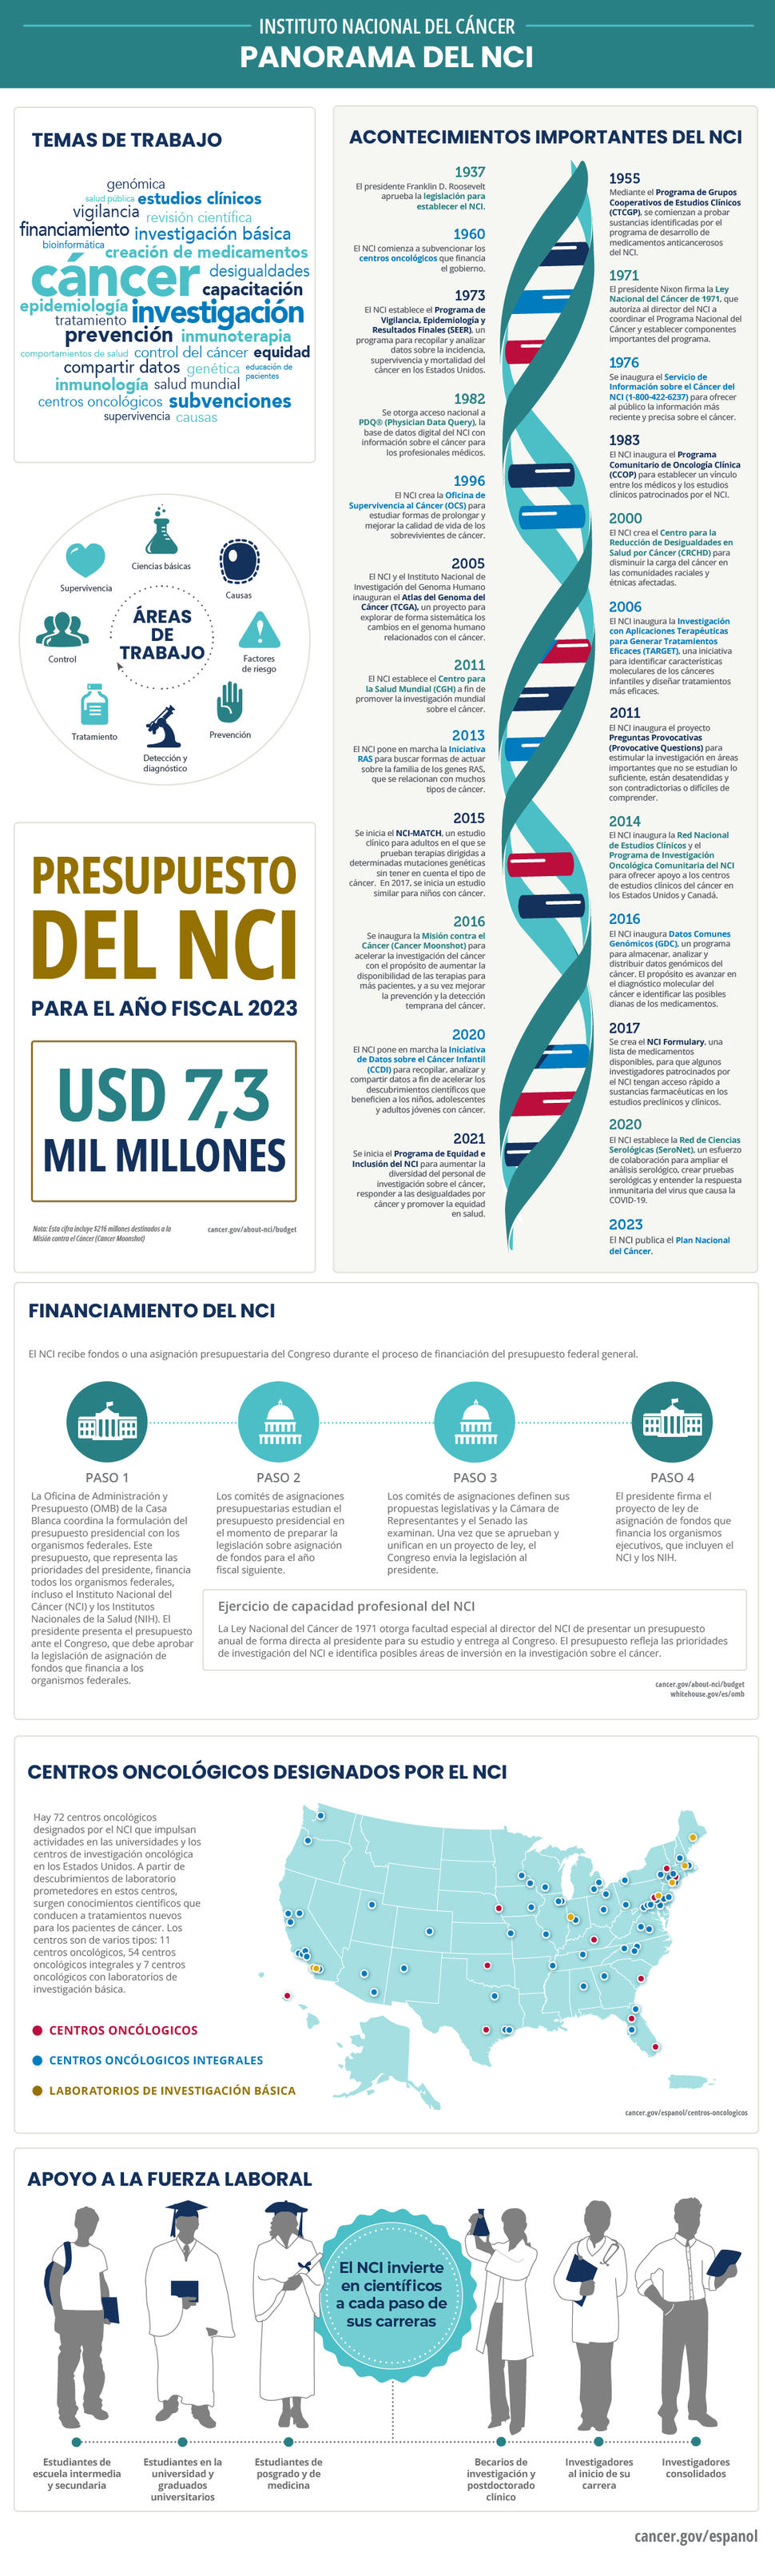 Panorama del NCI que indica los acontecimientos históricos más importantes, el financiamiento, las actividades de capacitación, y los centros oncológicos designados por el NCI. 